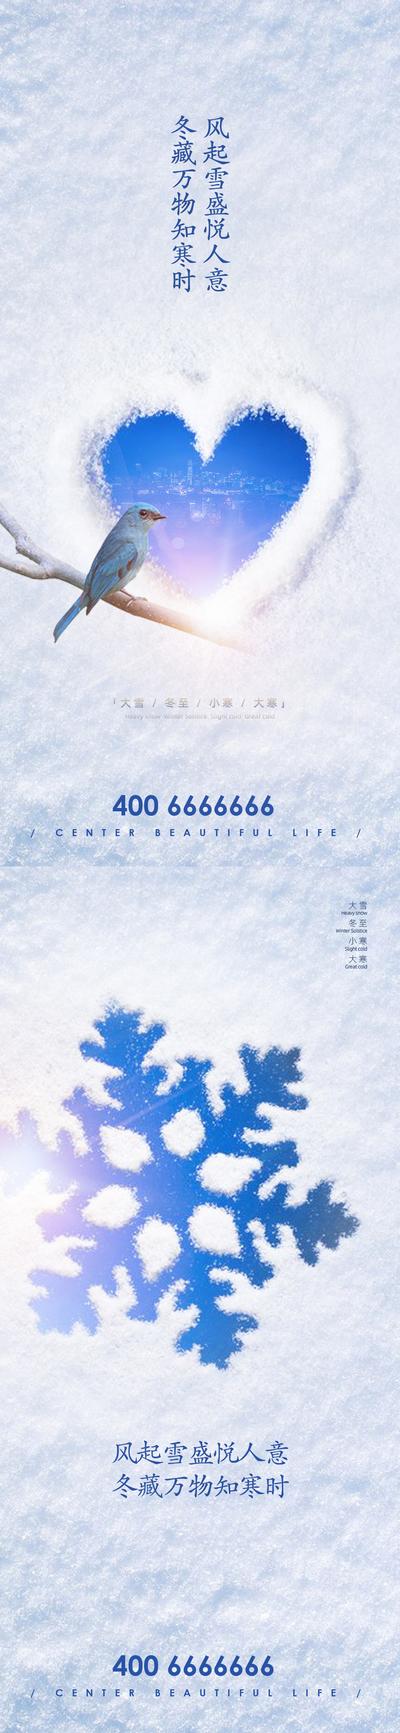 南门网 冬季节气系列海报